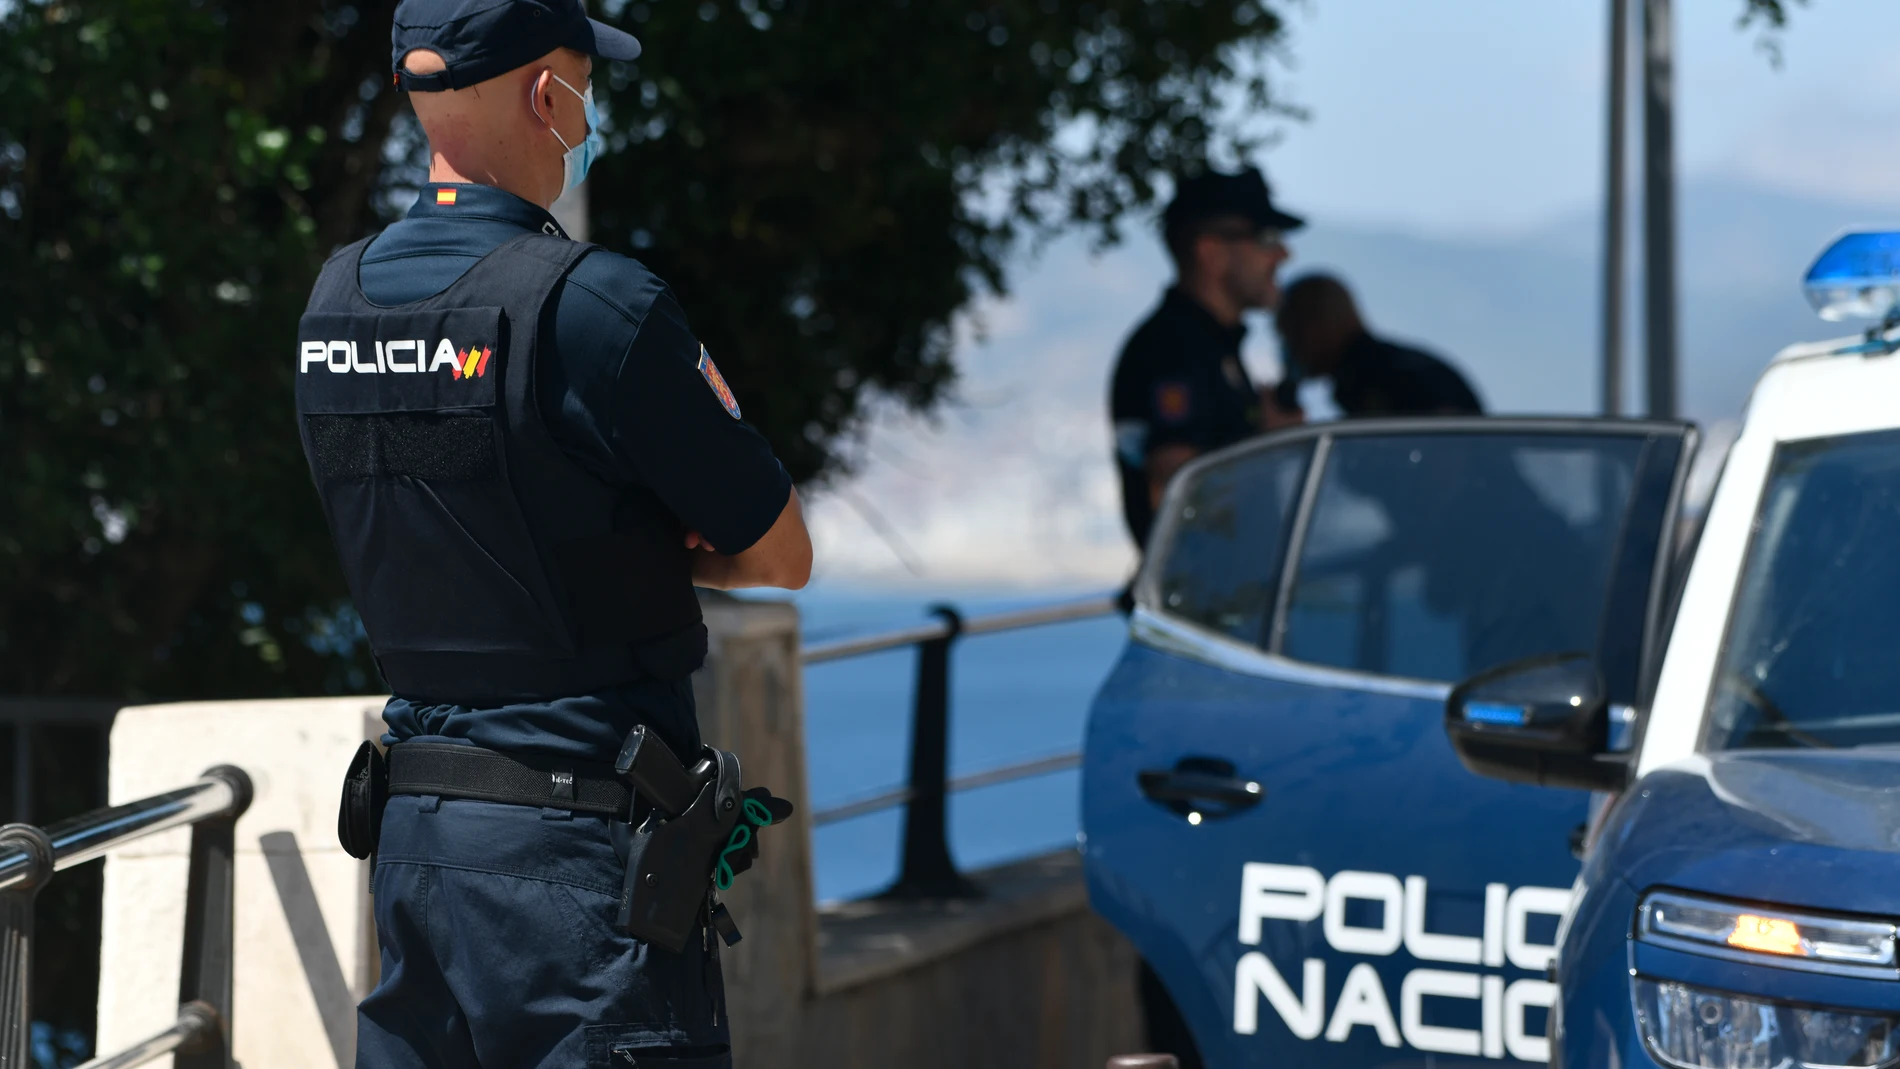 Un agente de policía nacional vigila en una zona rocosa de la playa, en una imagen de archivo